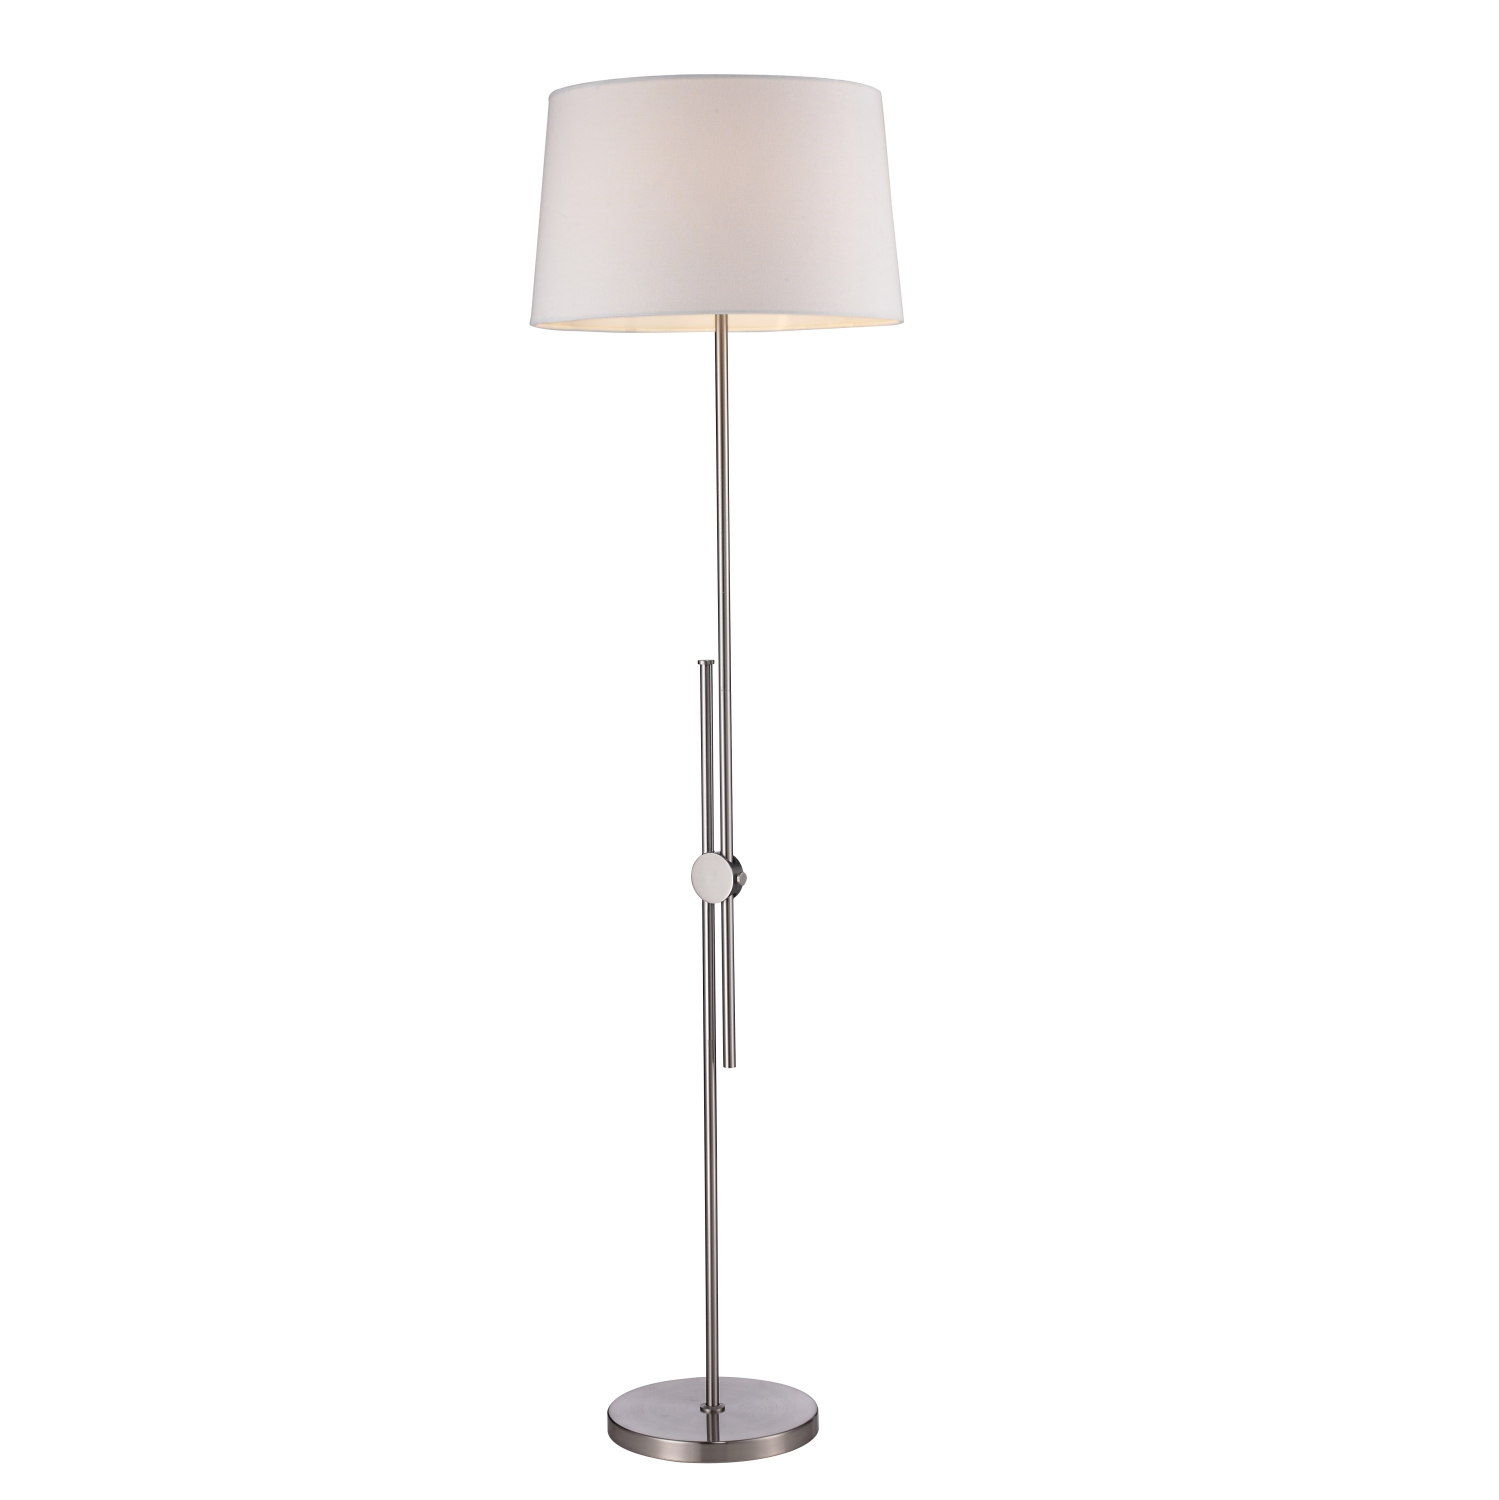 46-70"H (max) Adjustable Floor Lamp Plated Brusehd Steel Finish